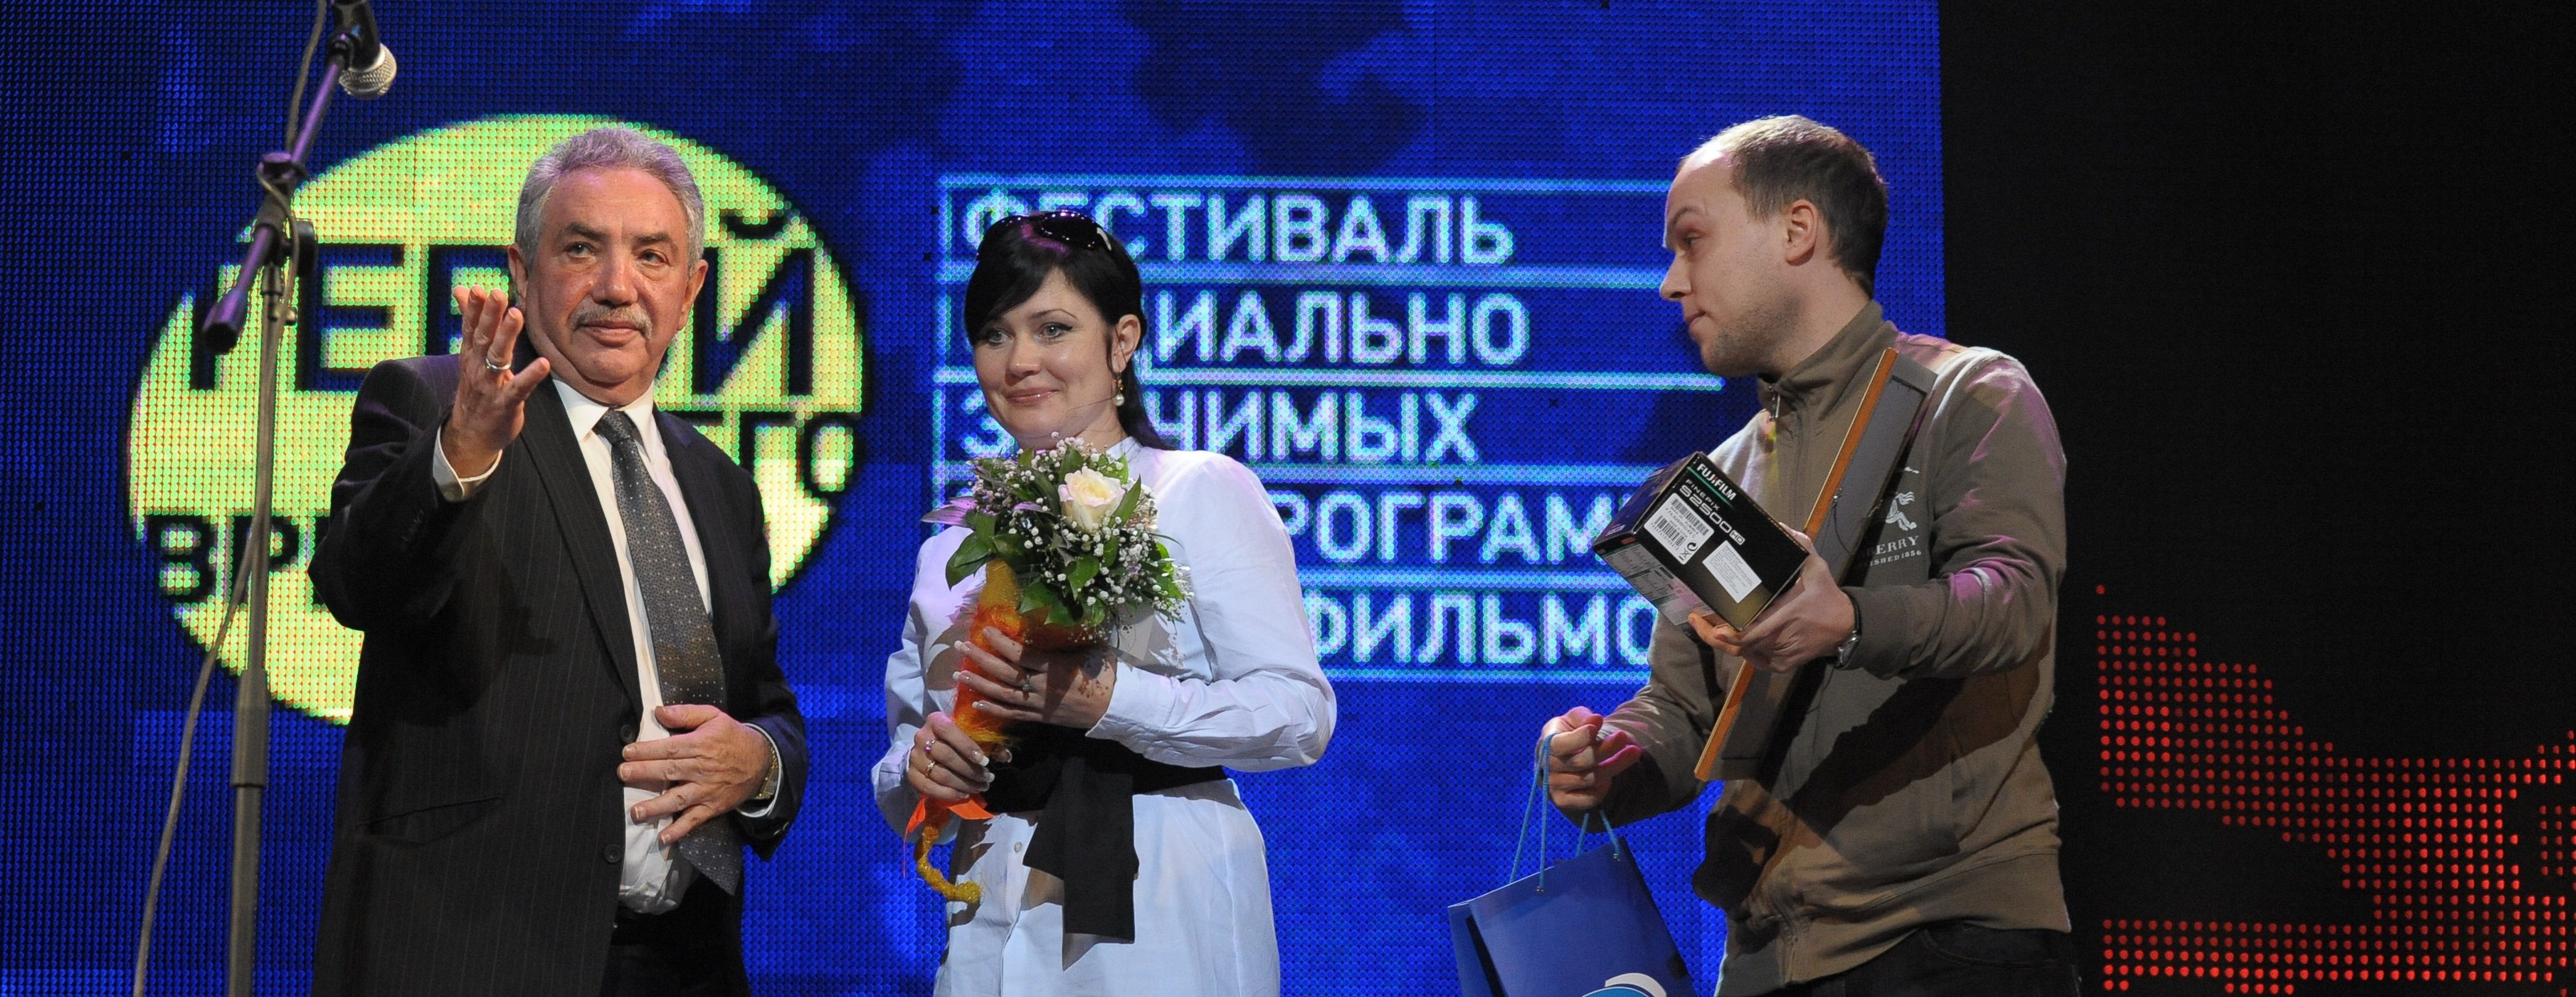 Всероссийский фестиваль социально значимых телепрограмм и телефильмов «Герой нашего времени»